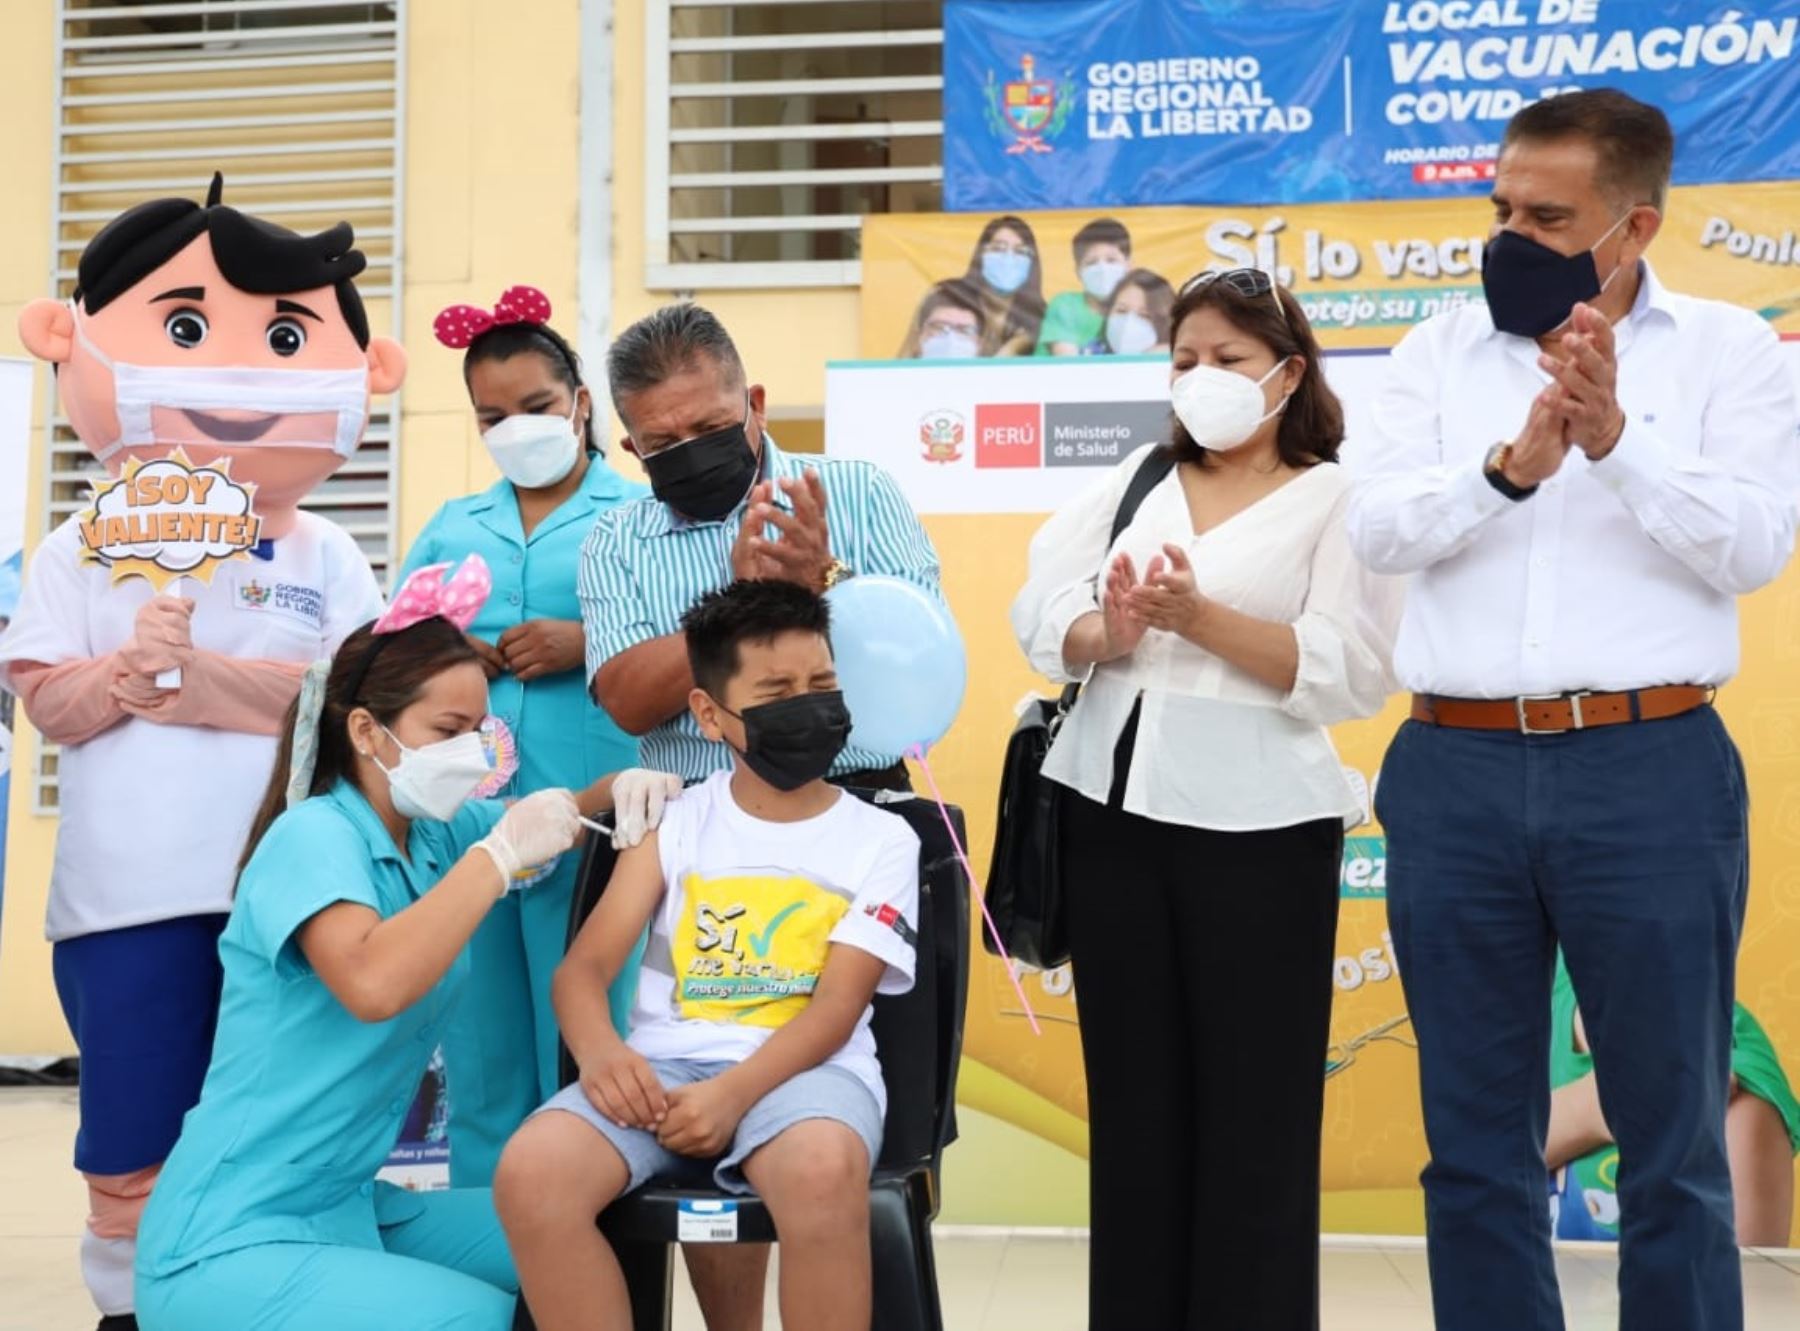 Niño trujillano de 10 años de edad se convirtió en el primer vacunado contra el covid-19 en la región La Libertad. Foto: ANDINA/difusión.